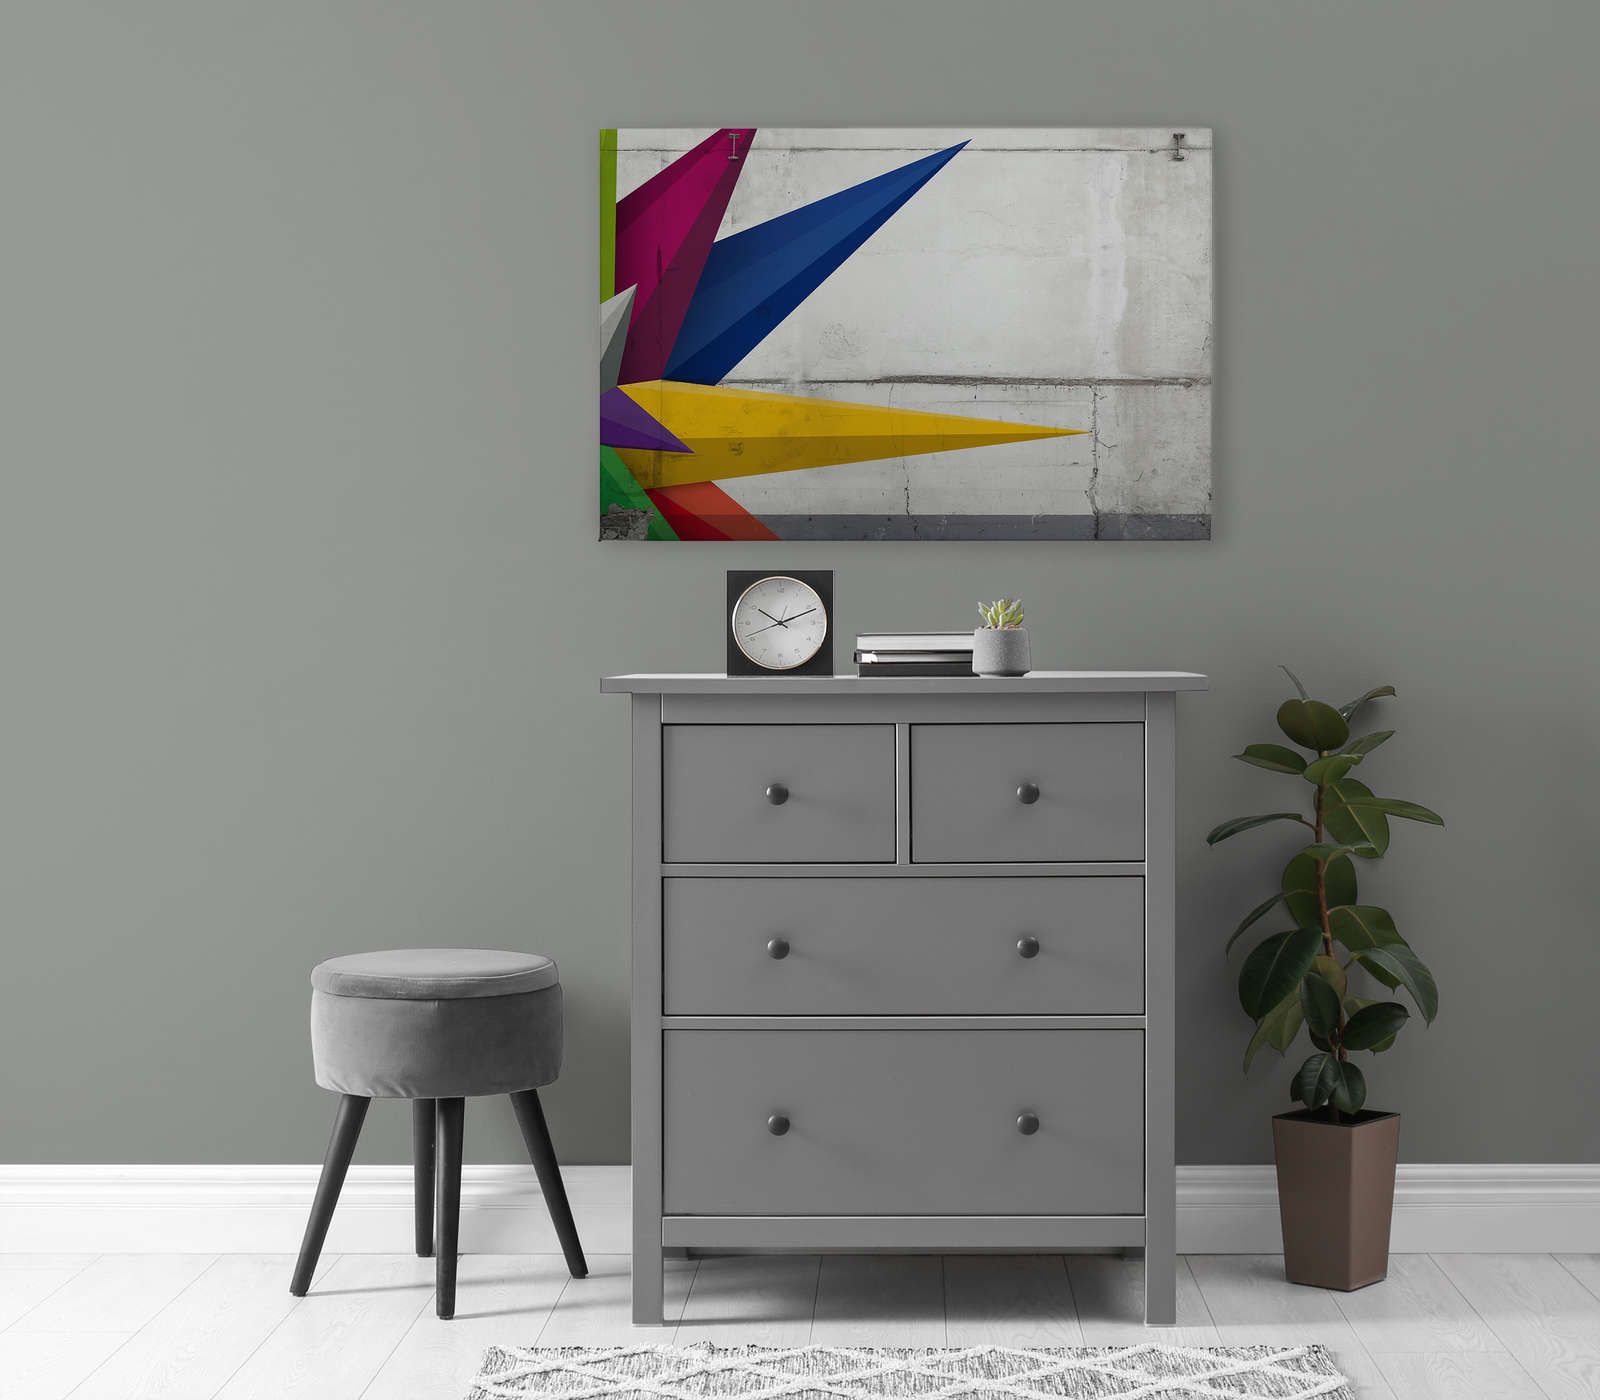             Pittura su tela effetto cemento con grafica - 0,90 m x 0,60 m
        